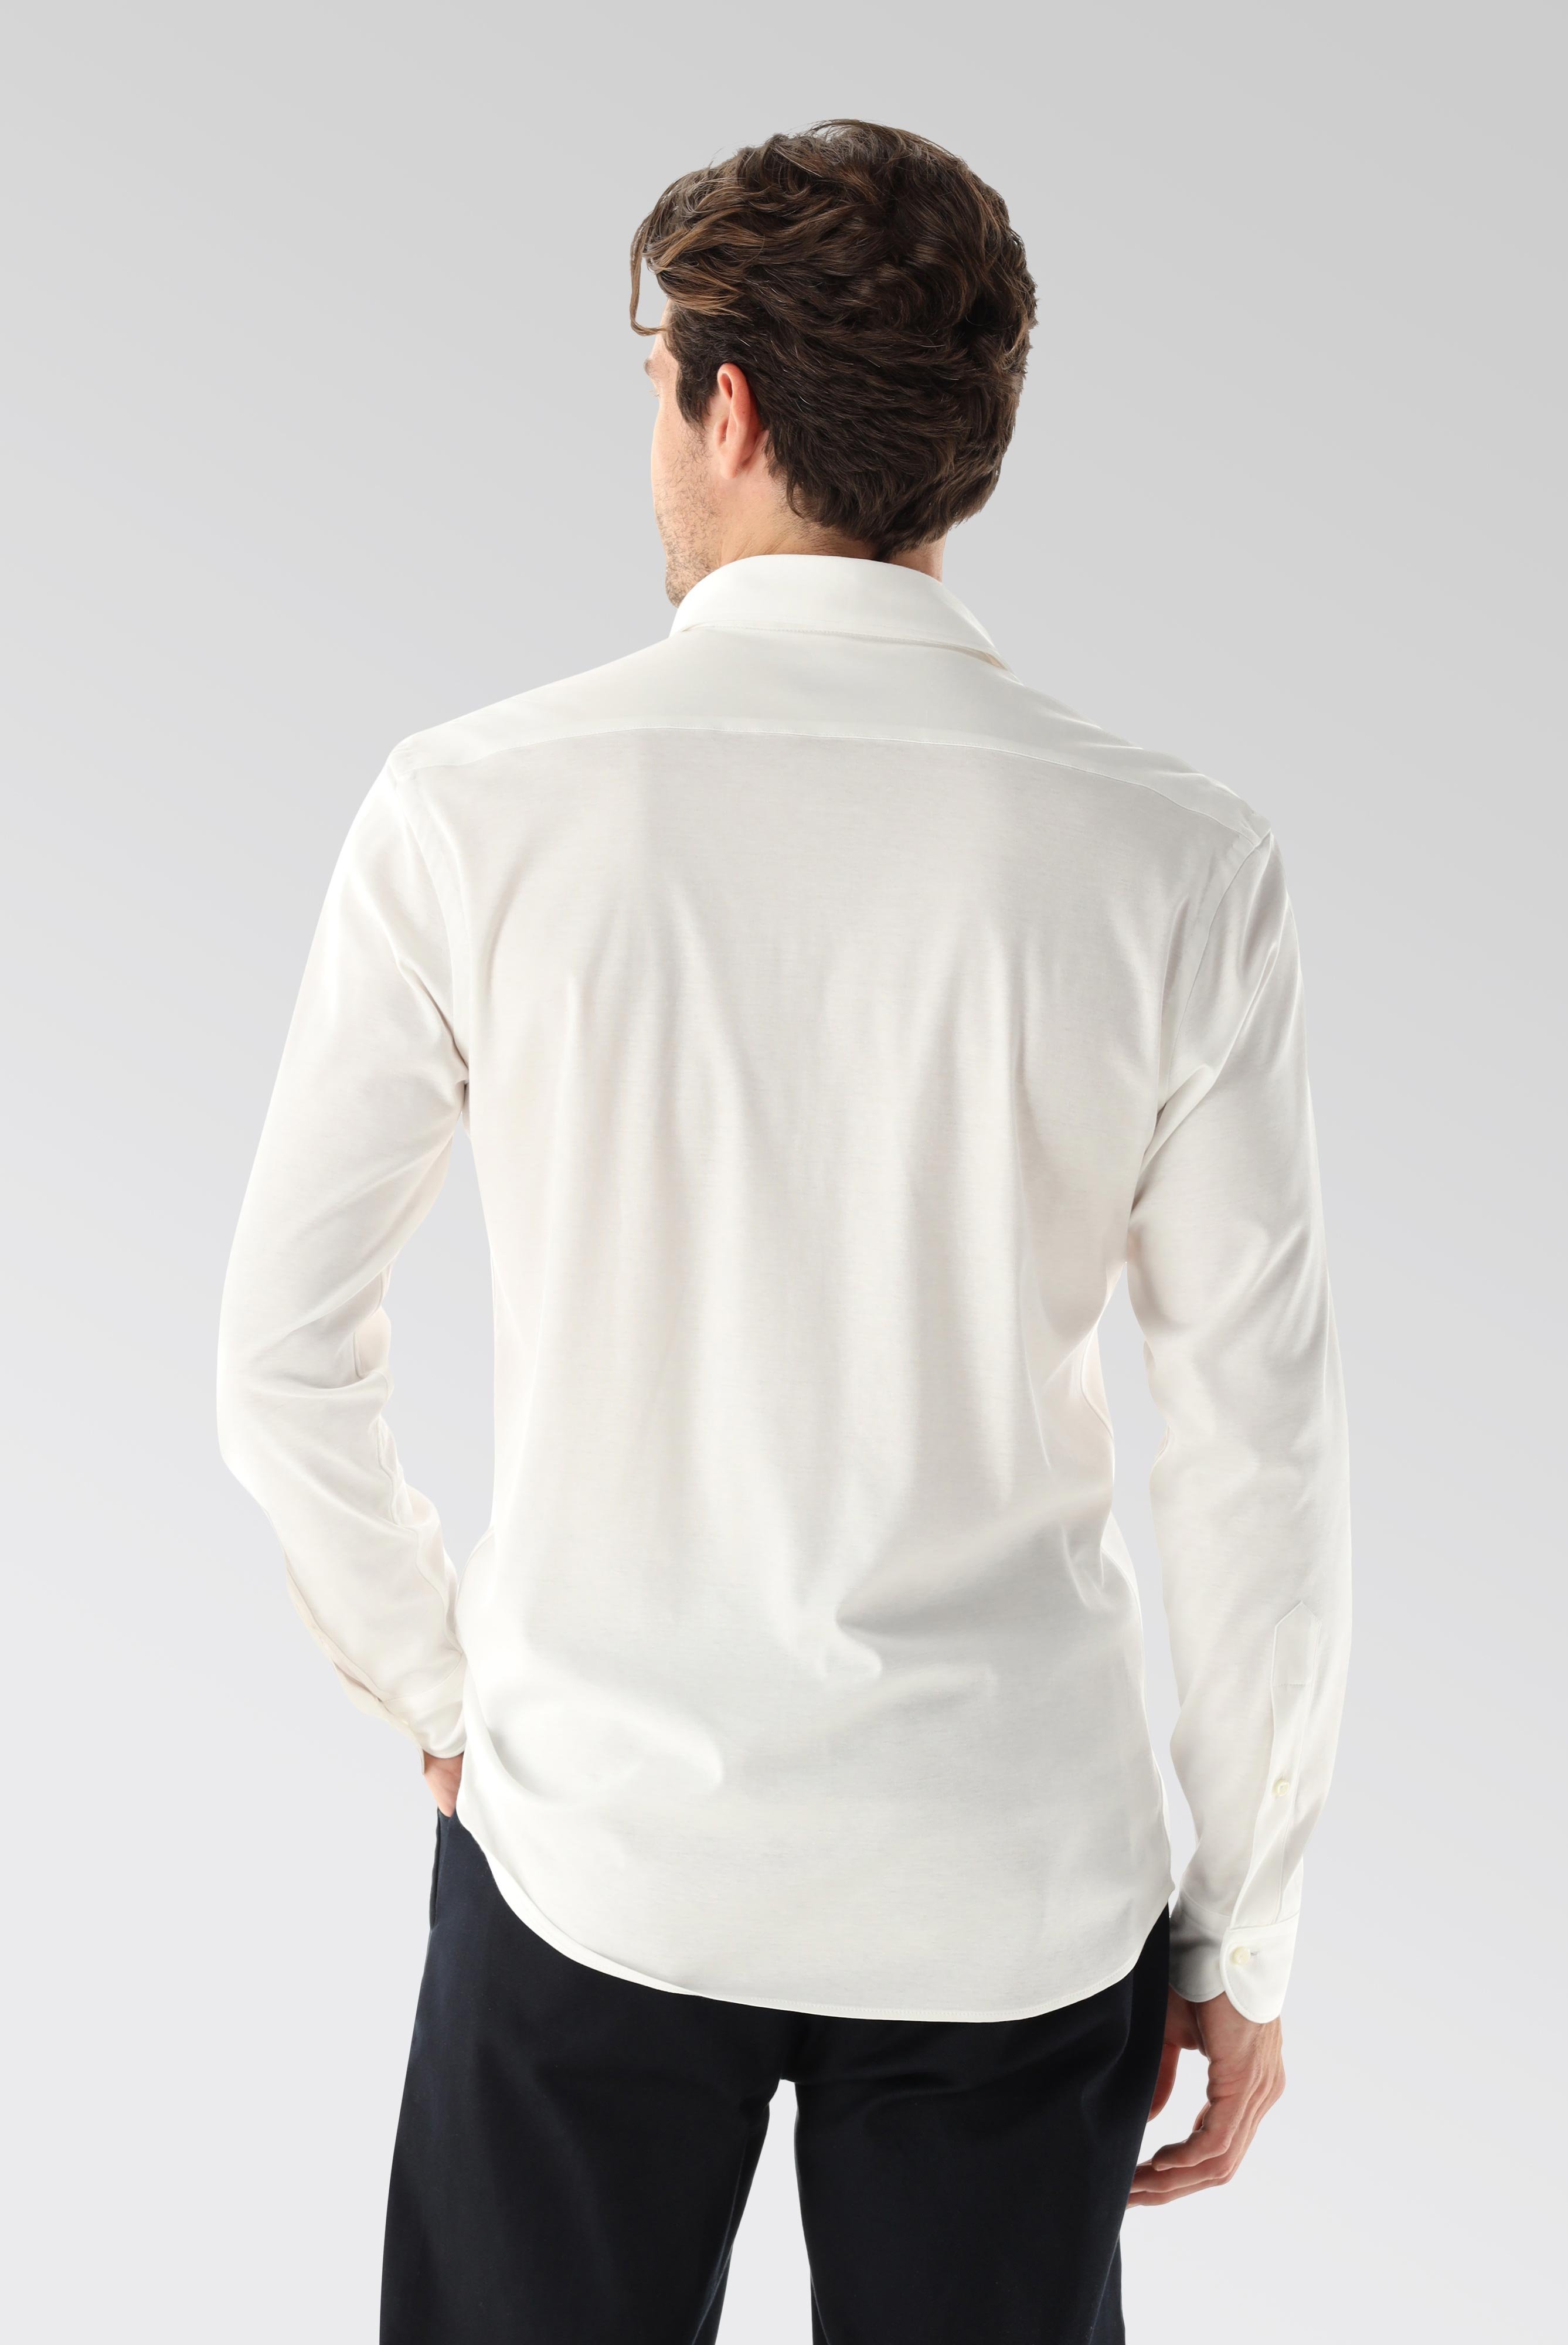 Bügelleichte Hemden+Jersey Hemd mit glänzender Optik Tailor Fit+20.1683.UC.180031.000.M